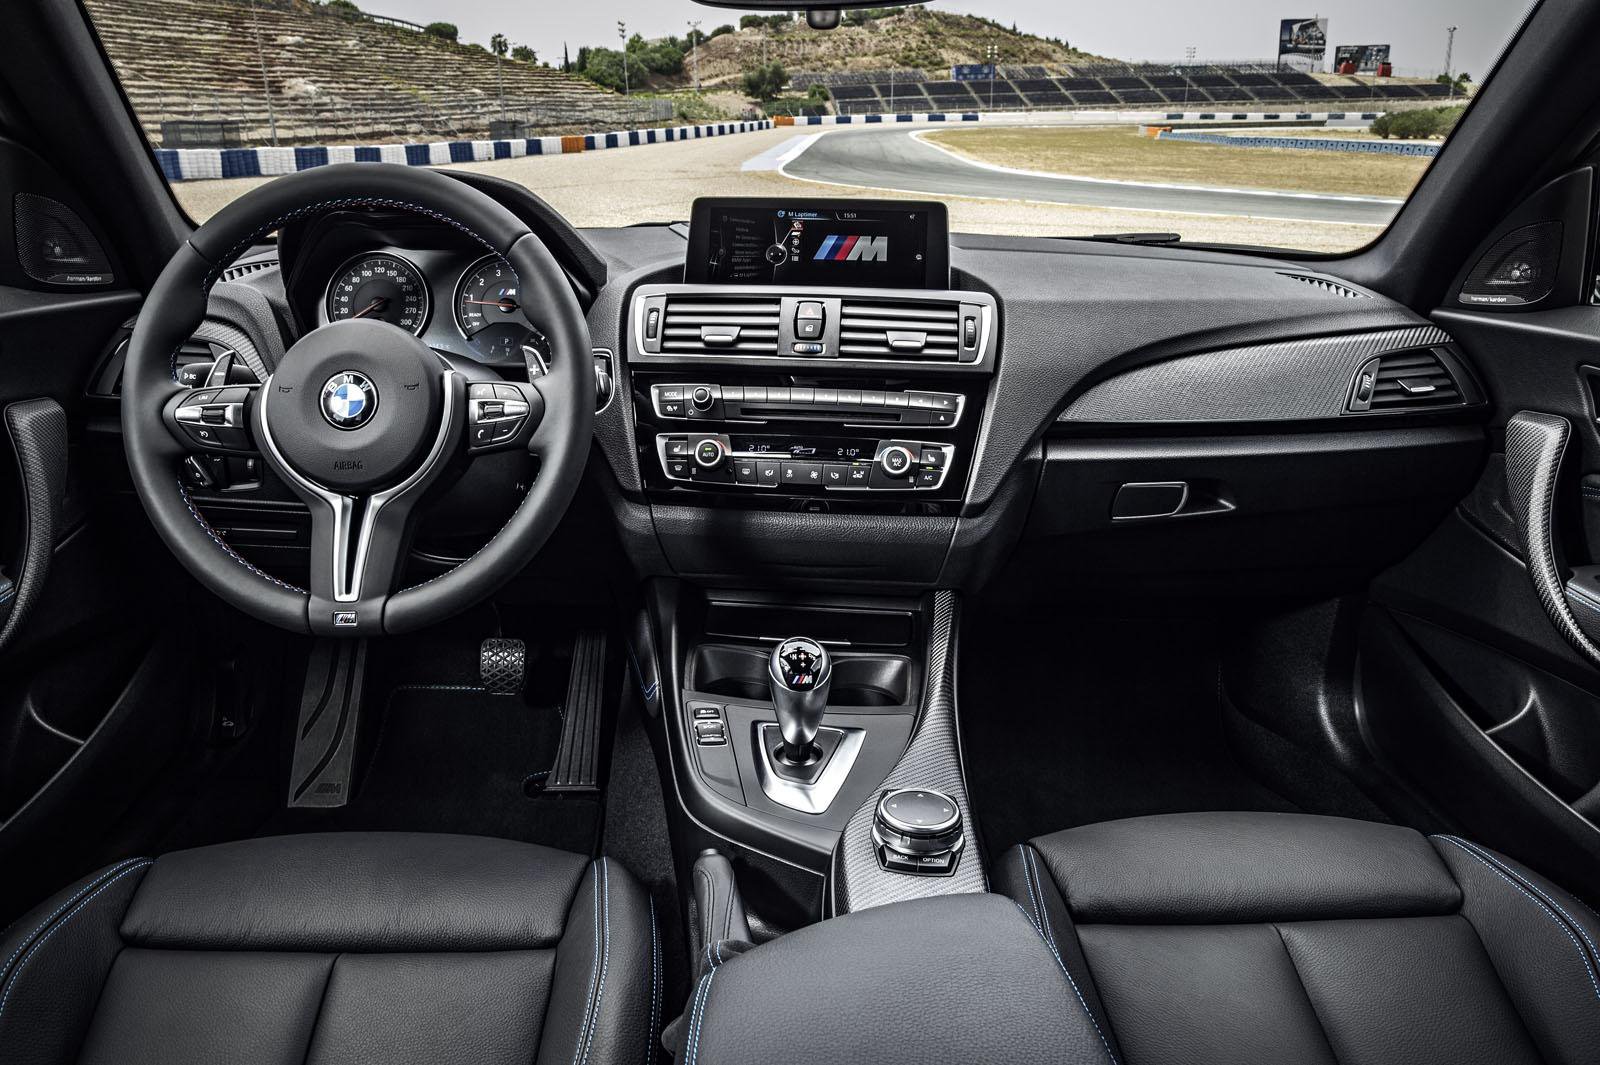 Interiér odpovídá většině řady 2, BMW M2.